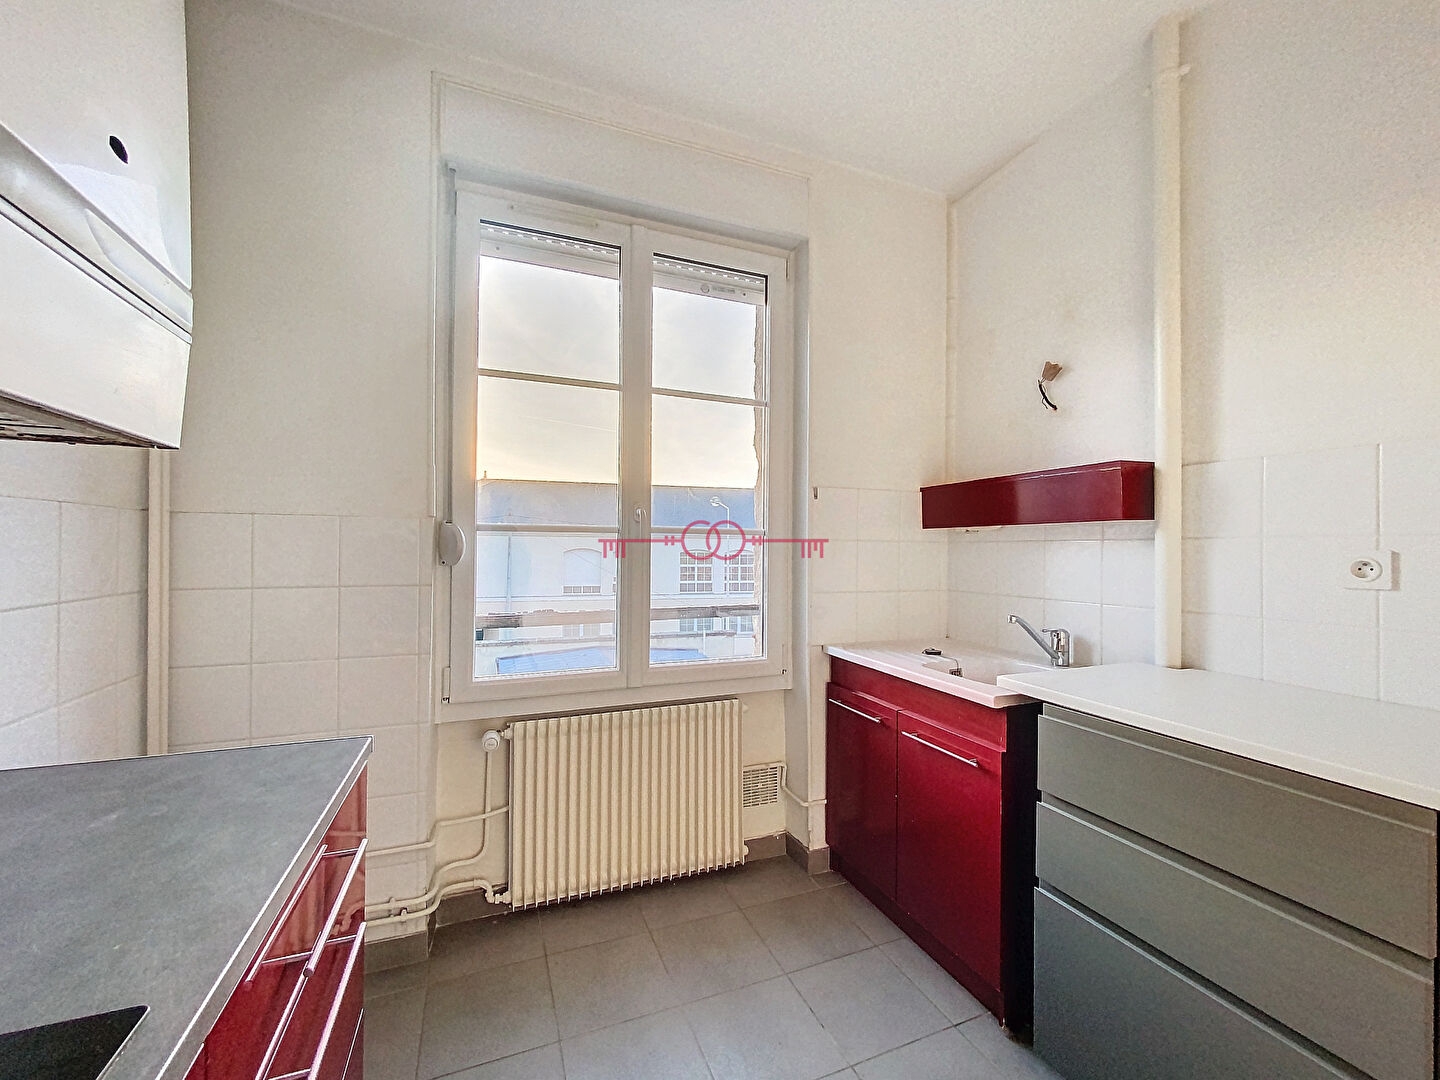 Appartement Reims 3 pièce(s) 55.75 m2 - 3